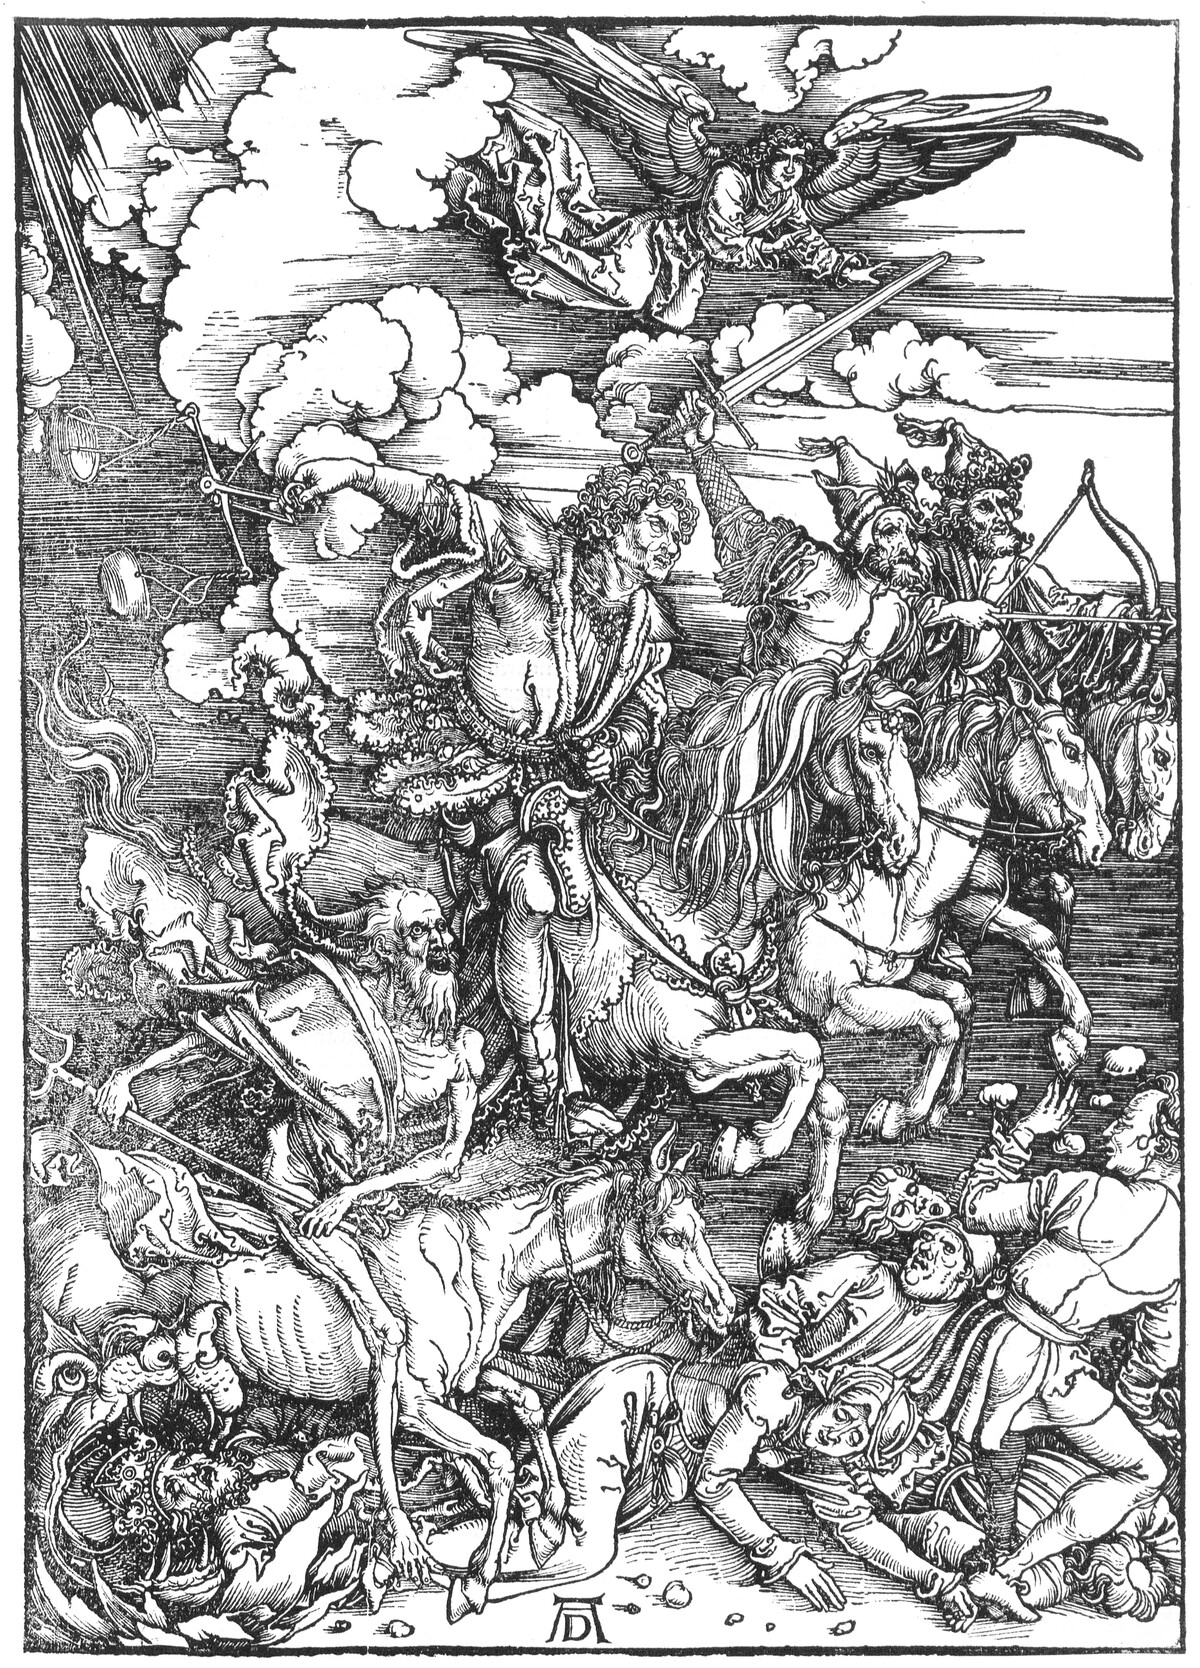 Dürer, Die apokalyptischen Reiter